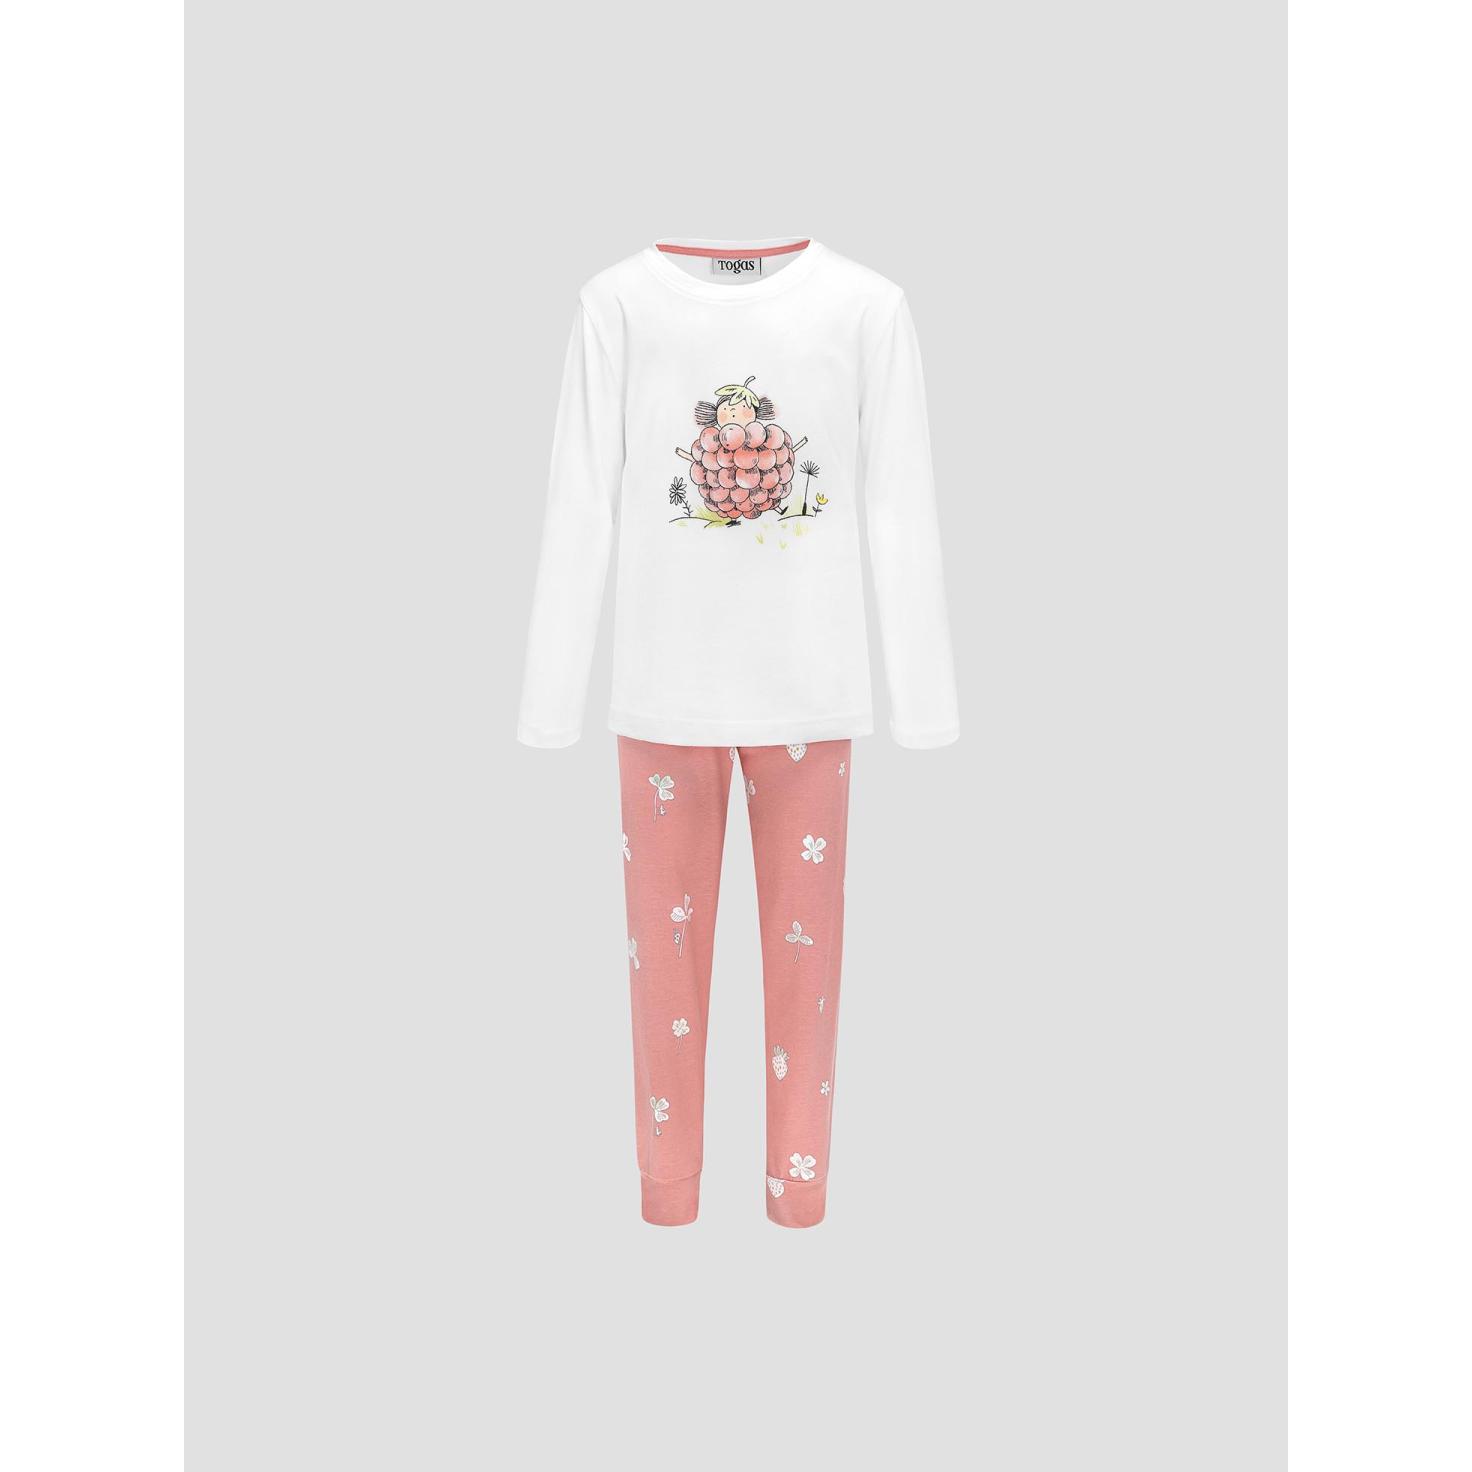 Пижама для девочек Kids by togas Стробби бело-розовый 92-98 см жен пижама с шортами инь янь белый р 50